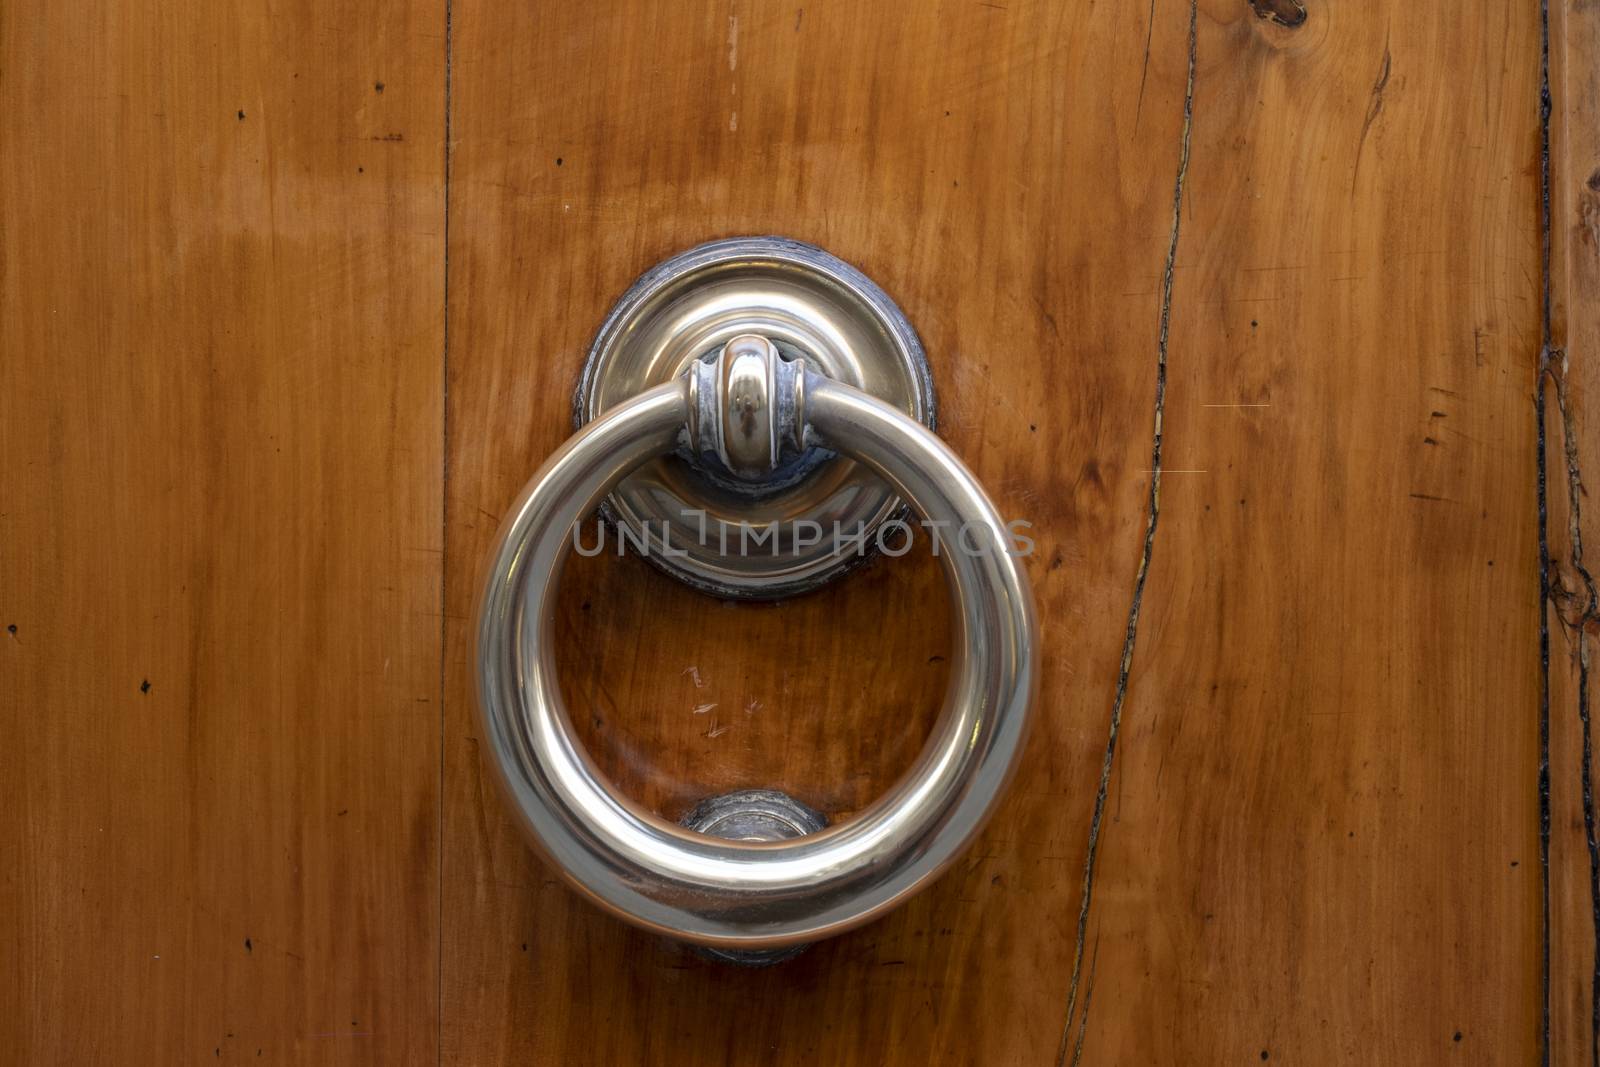 Vintage ornamented image of ancient door knocker on a wooden door.